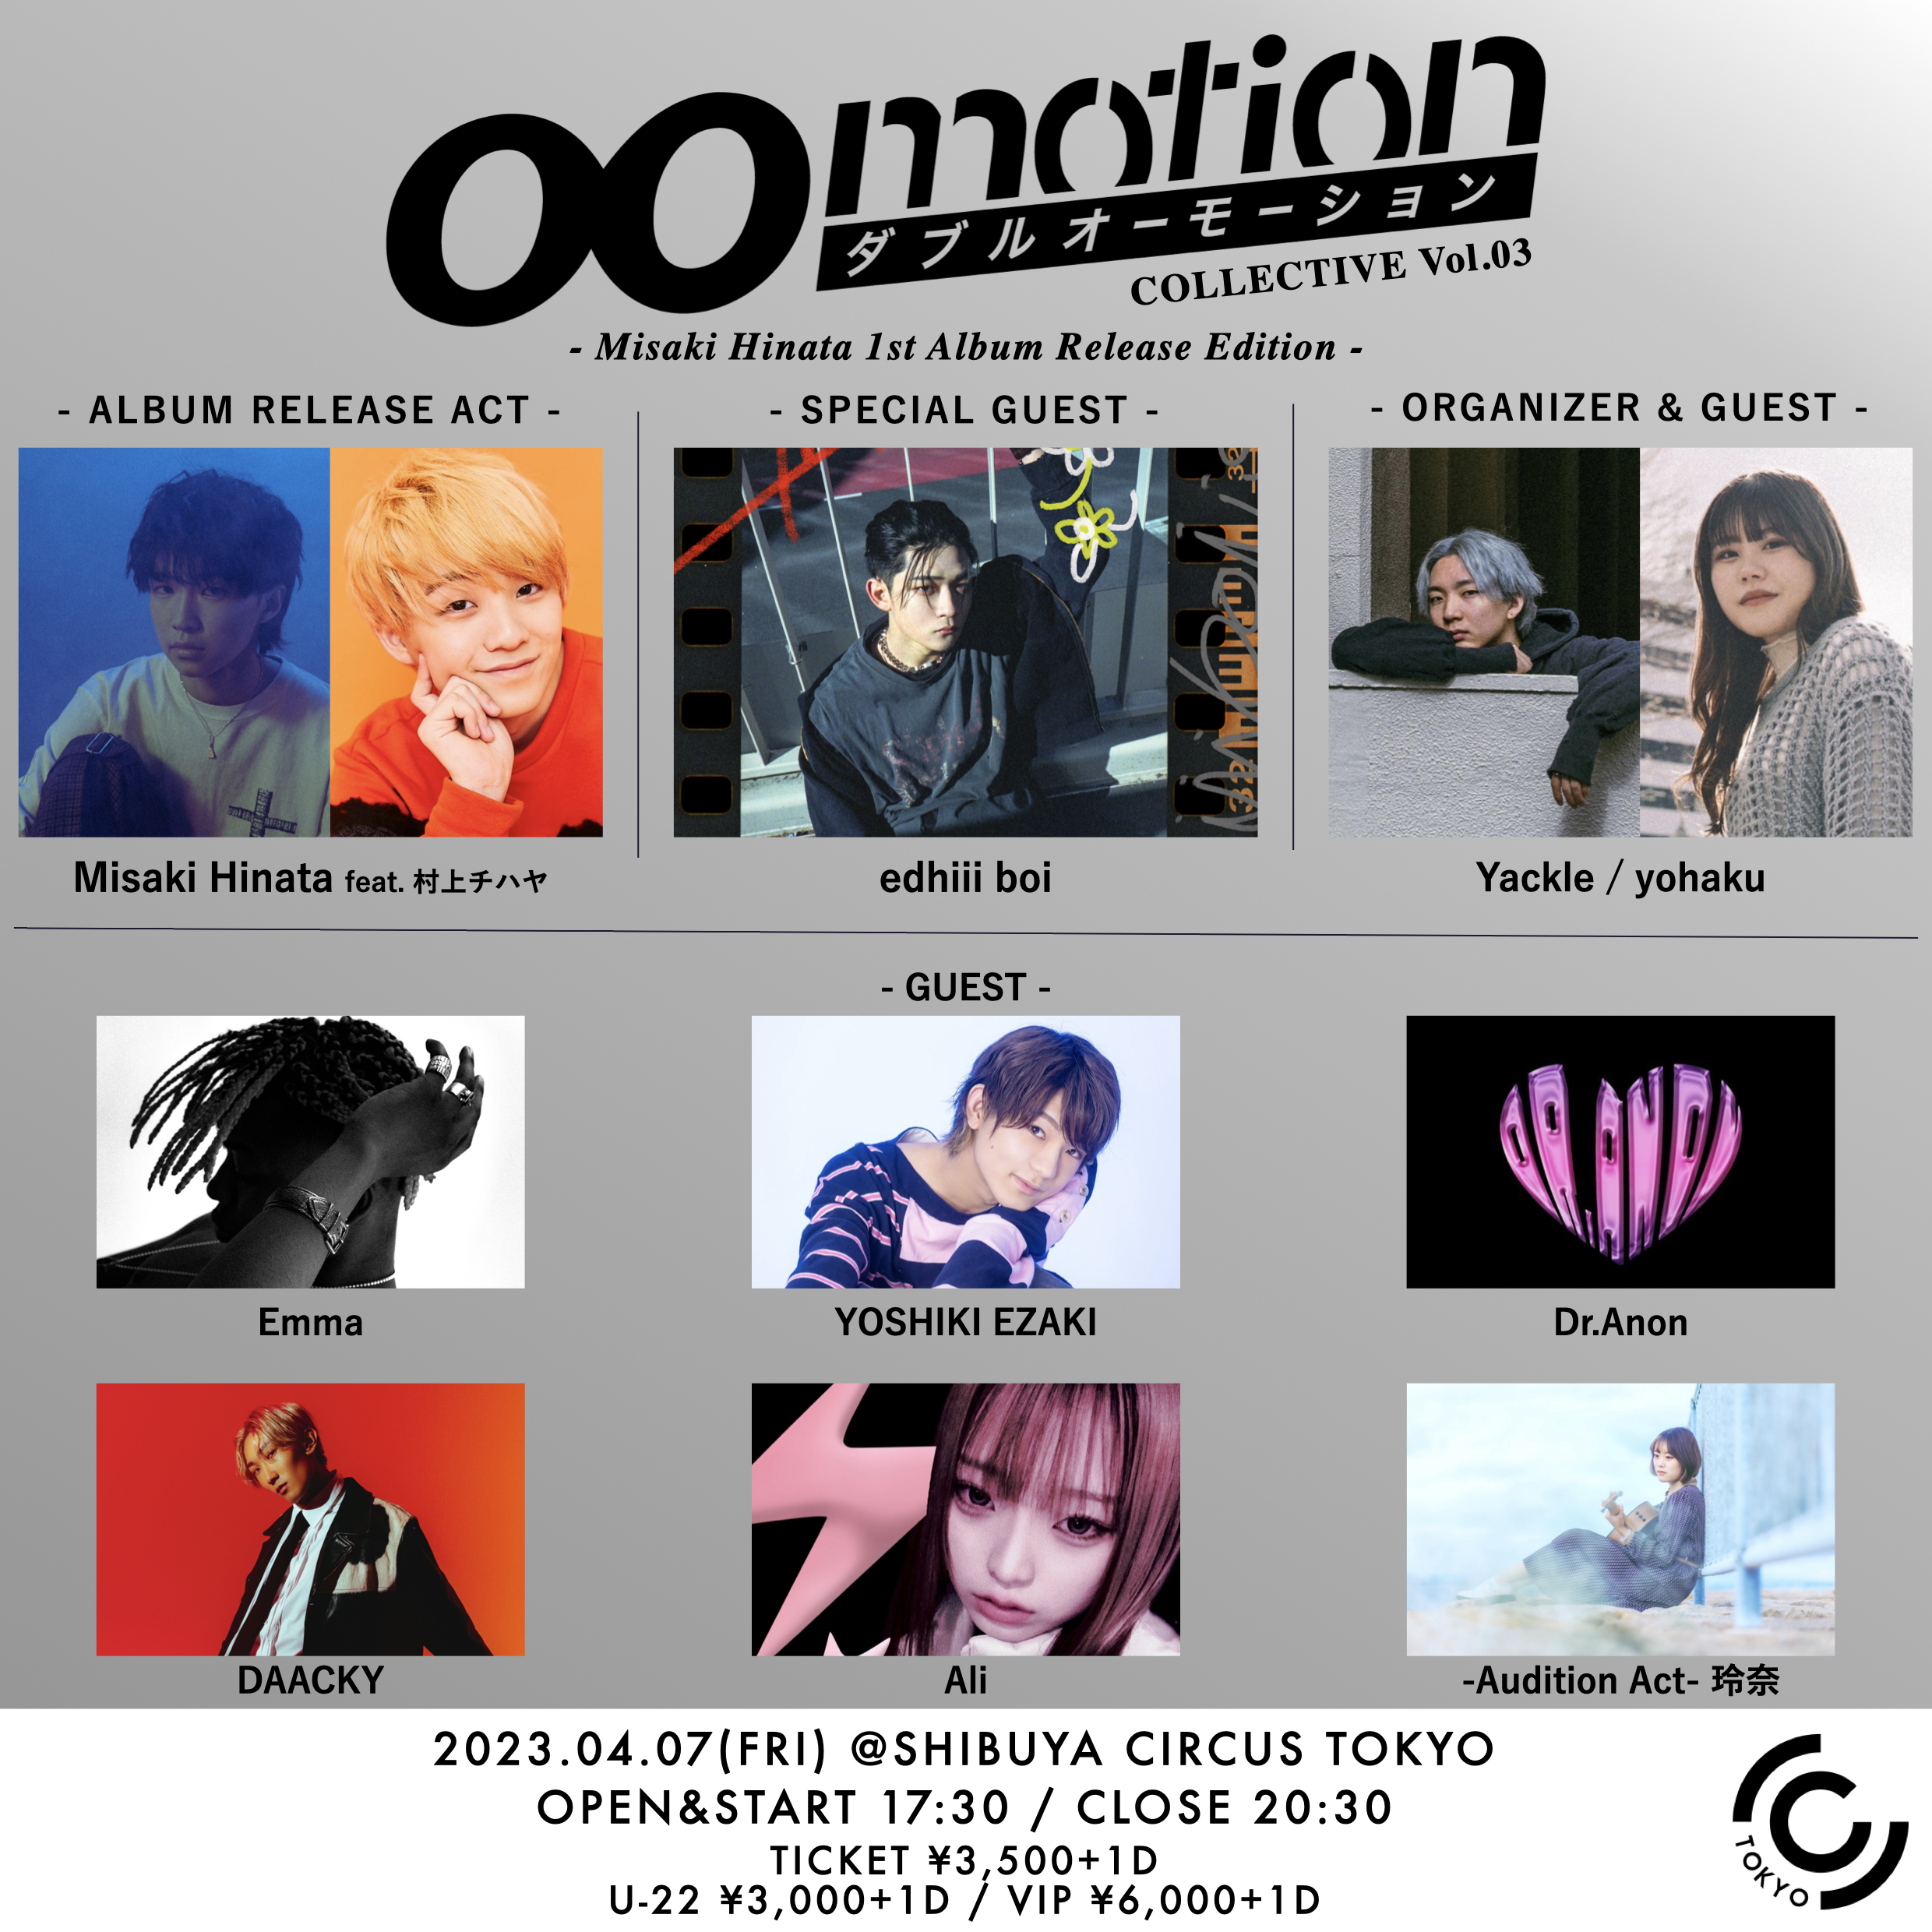 00motion Collective Vol.03 - Misaki Hinata 1st Album Release Edition - #00MC03